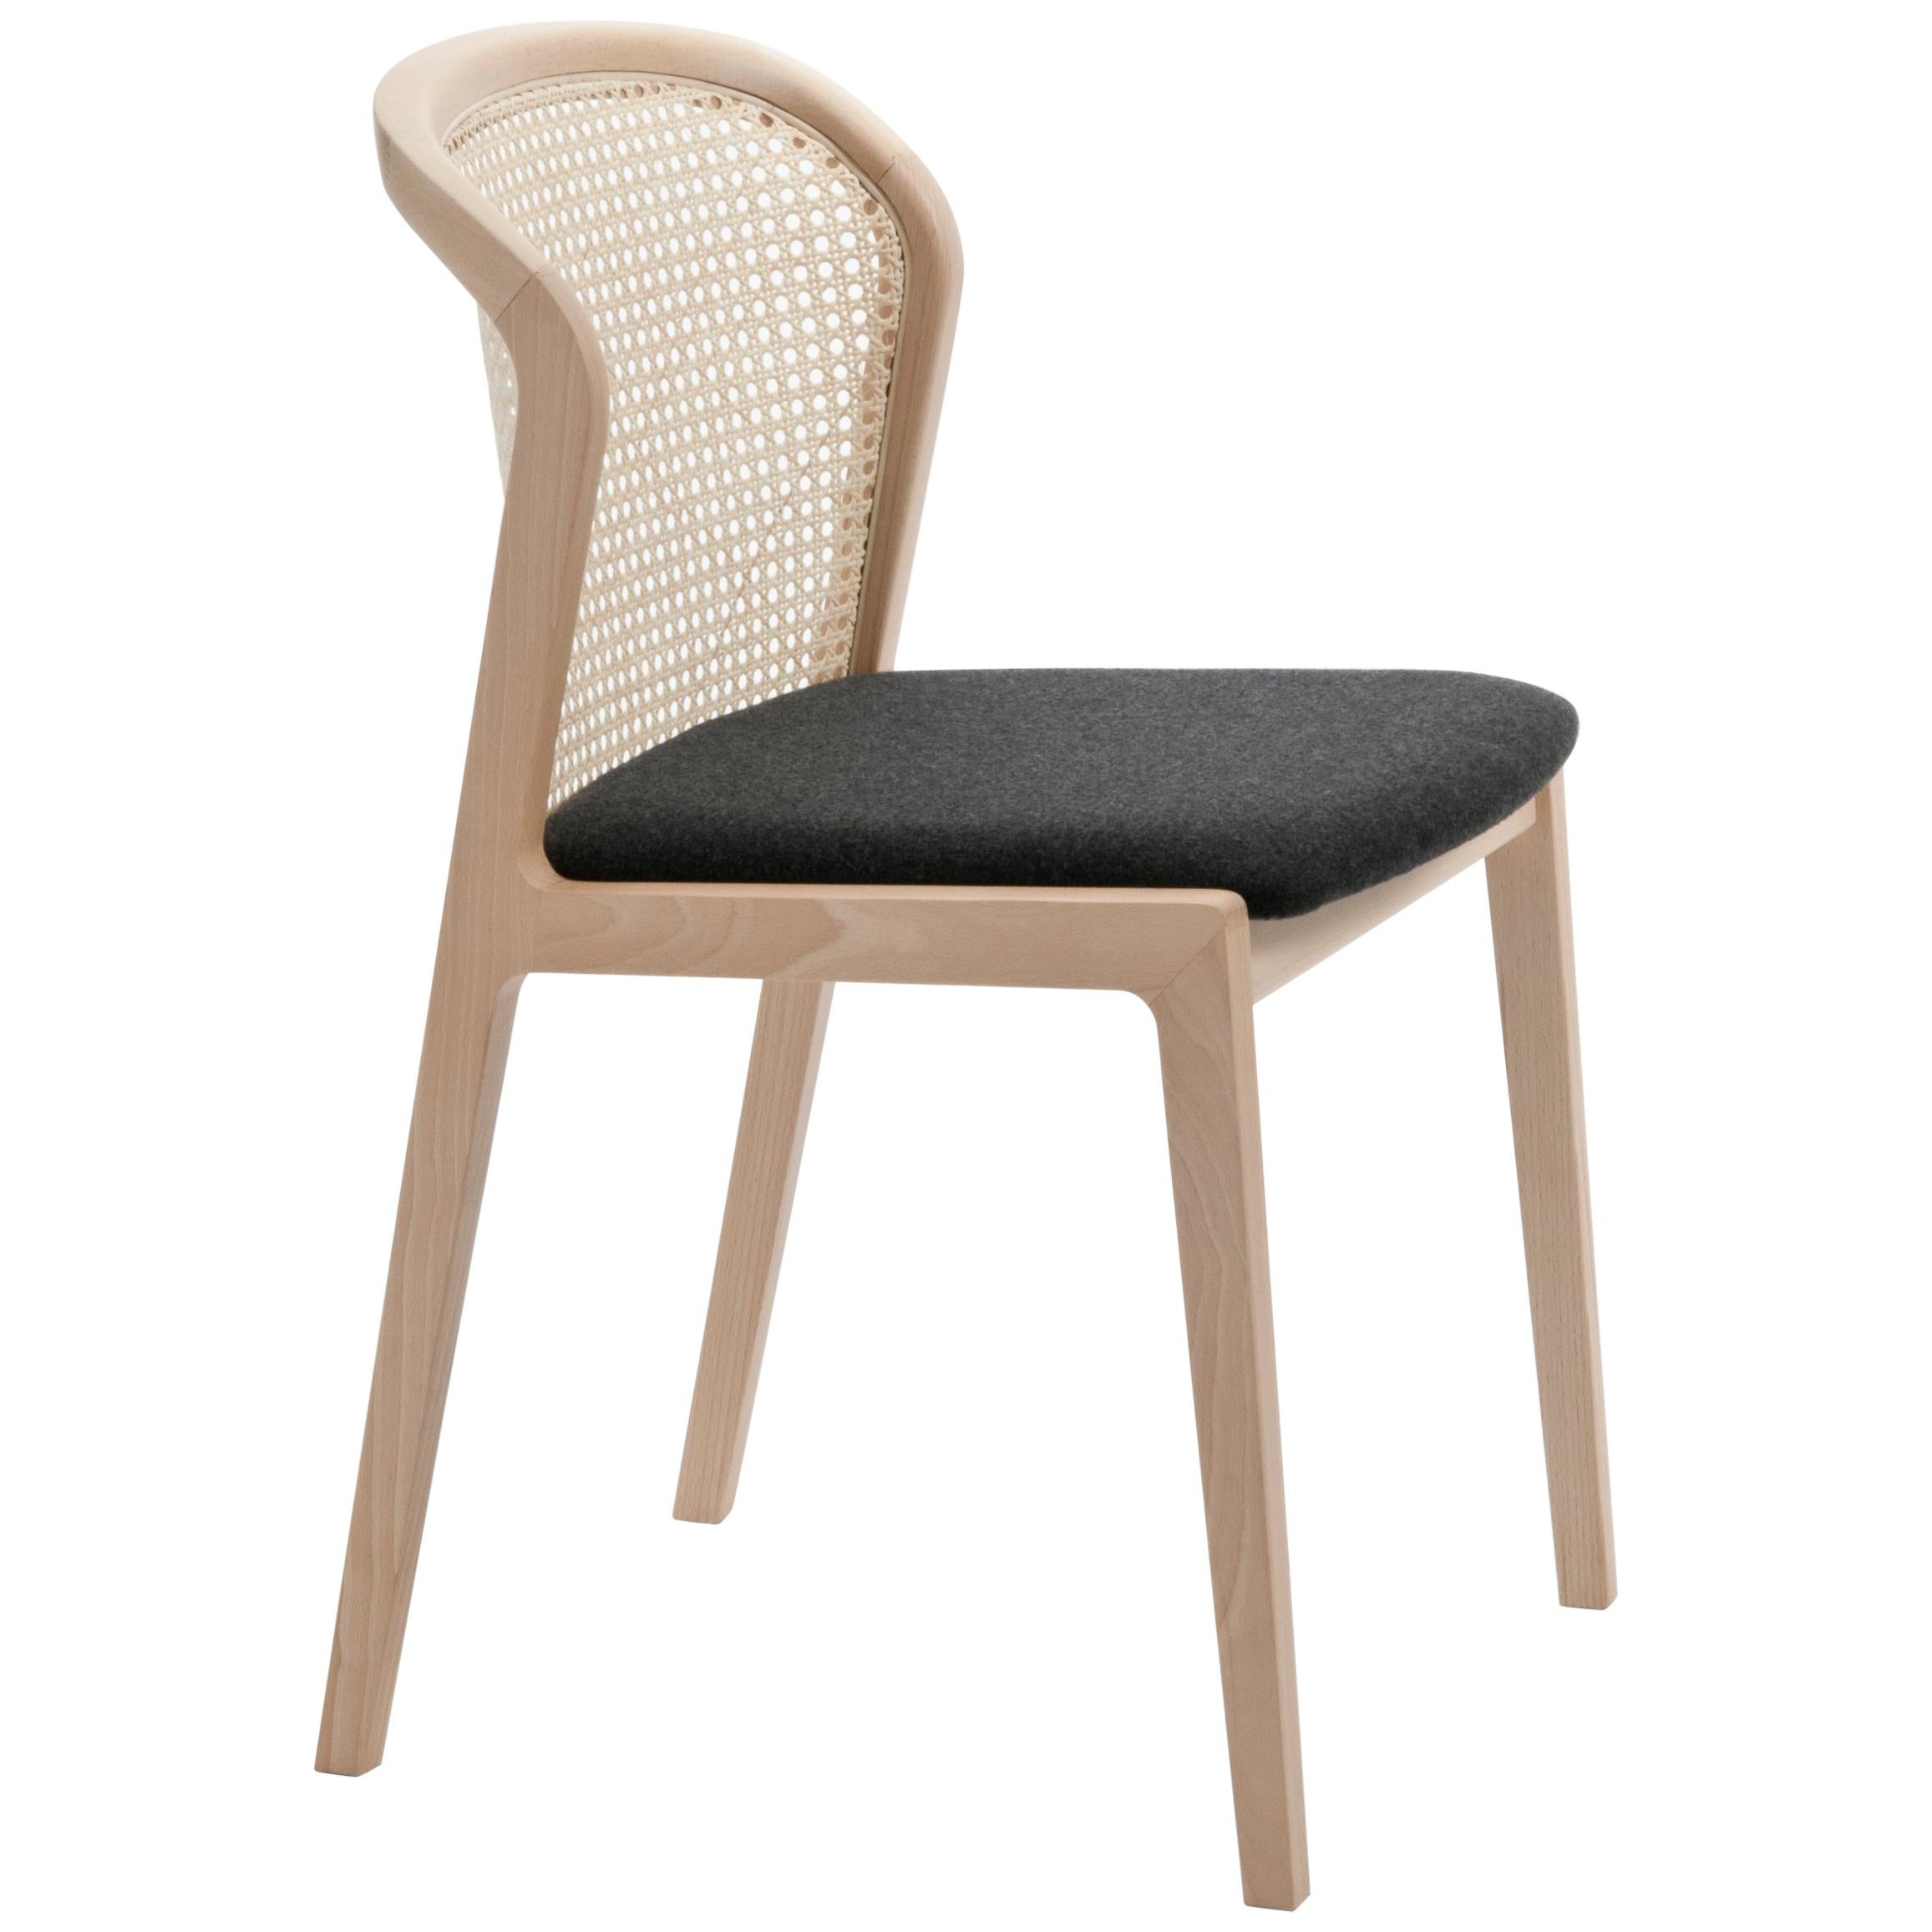 Wiener Stuhl Vienna von Col, Modernes Design aus Holz und Stroh, schwarz gepolsterter Sitz